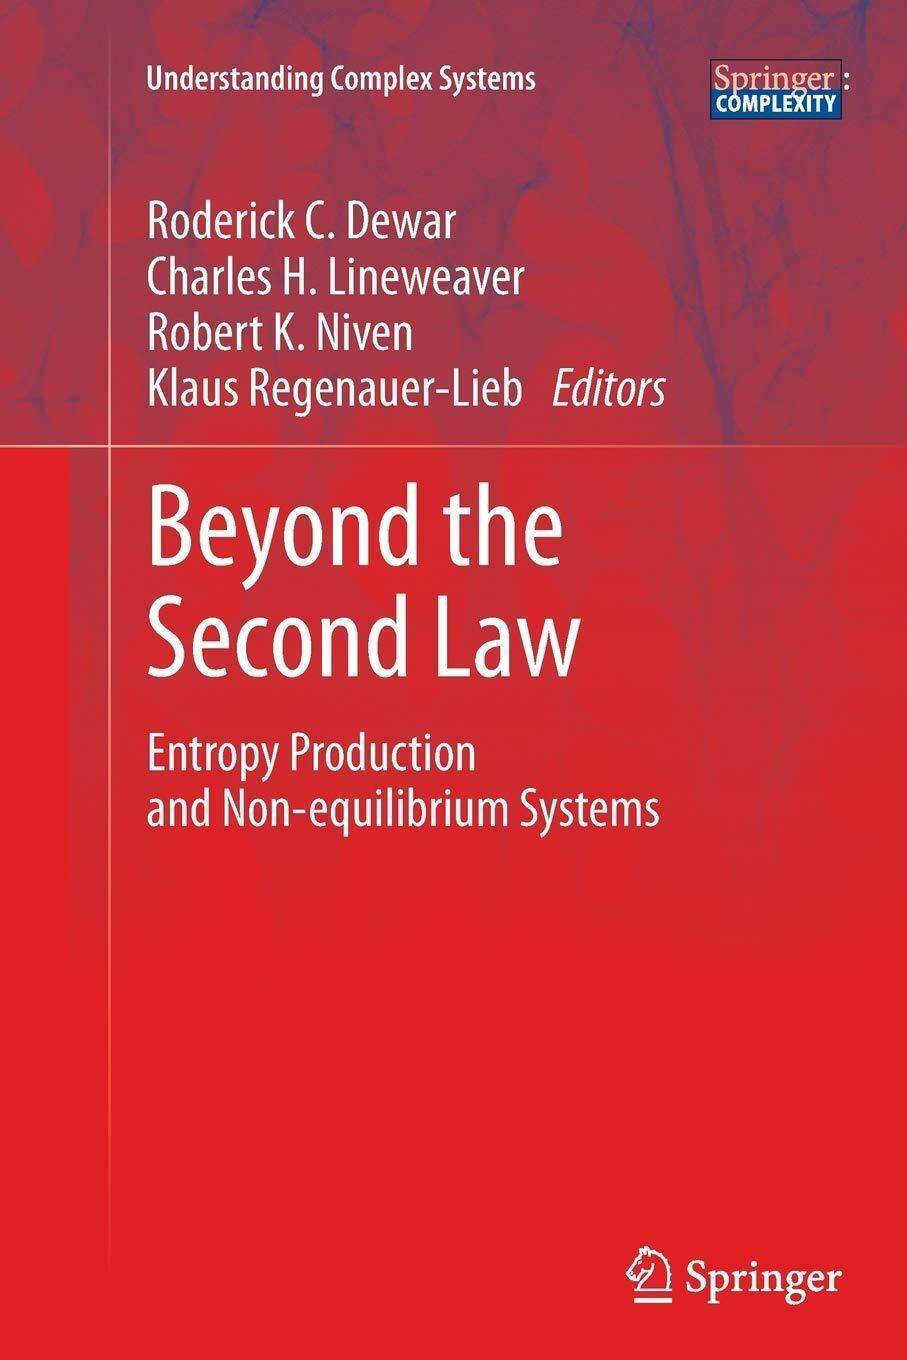 Beyond the Second Law - Roderick C. Dewar - Springer, 2016